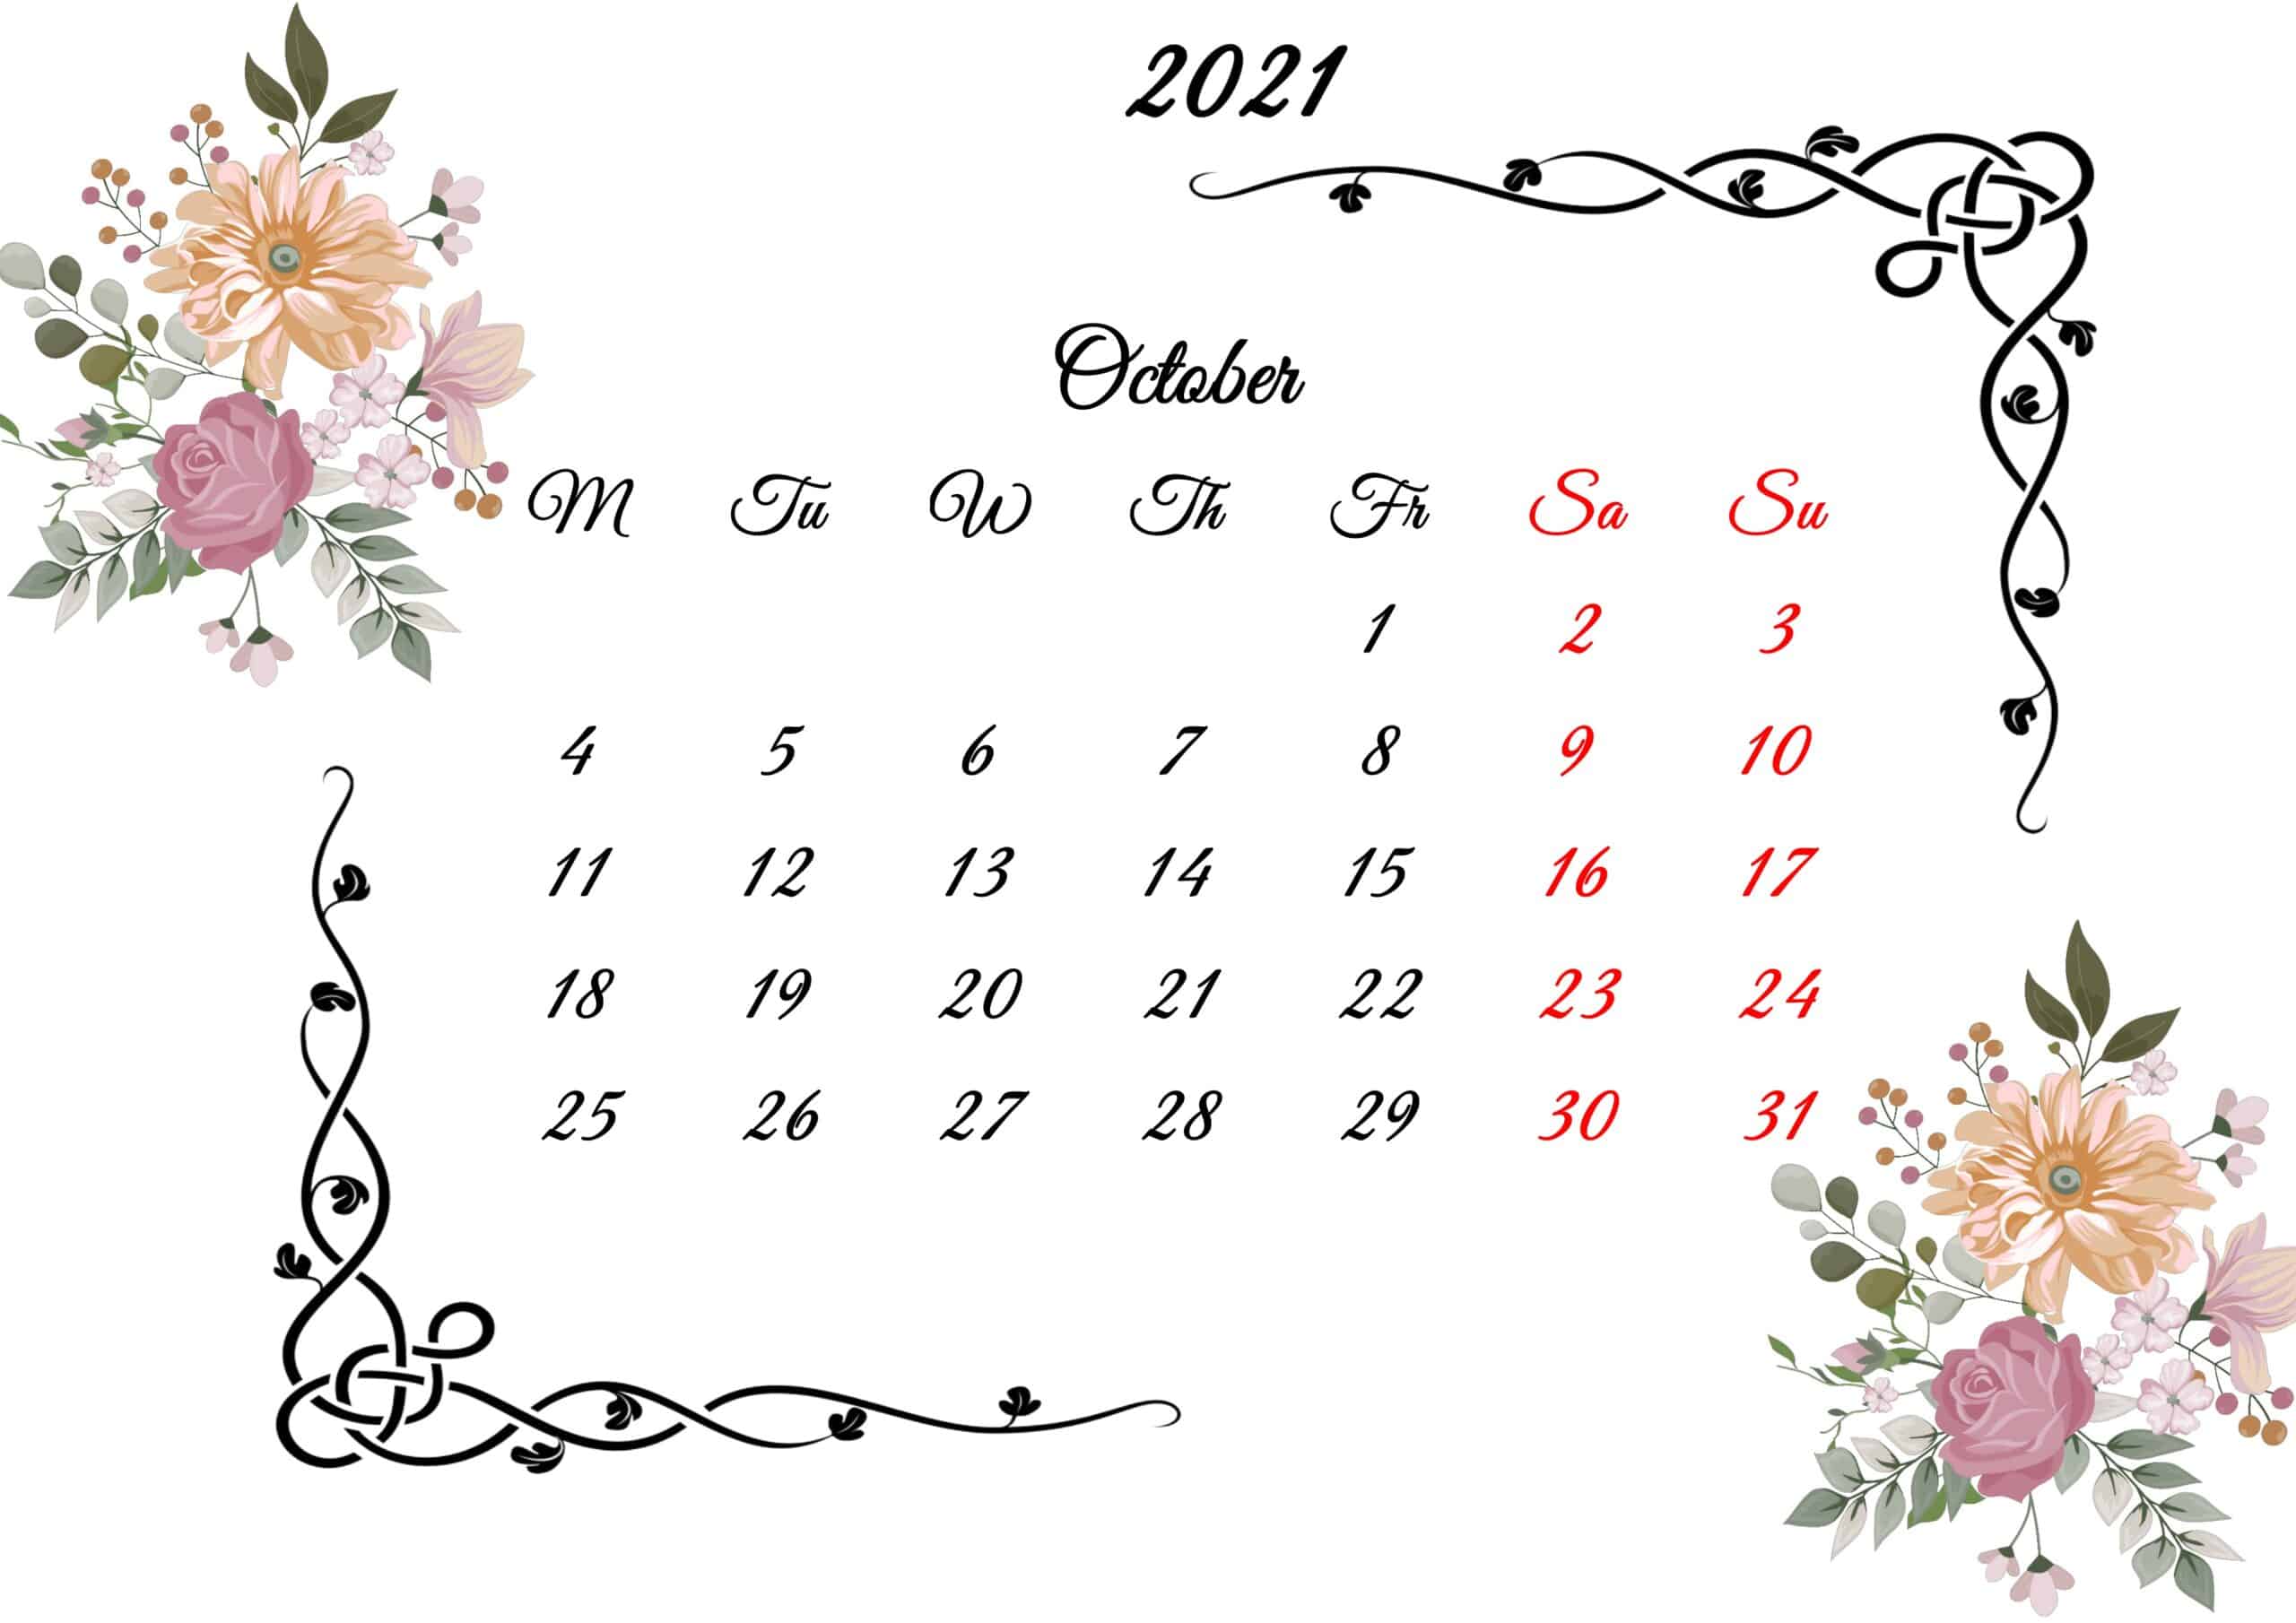 October Calendar 2021 Printable